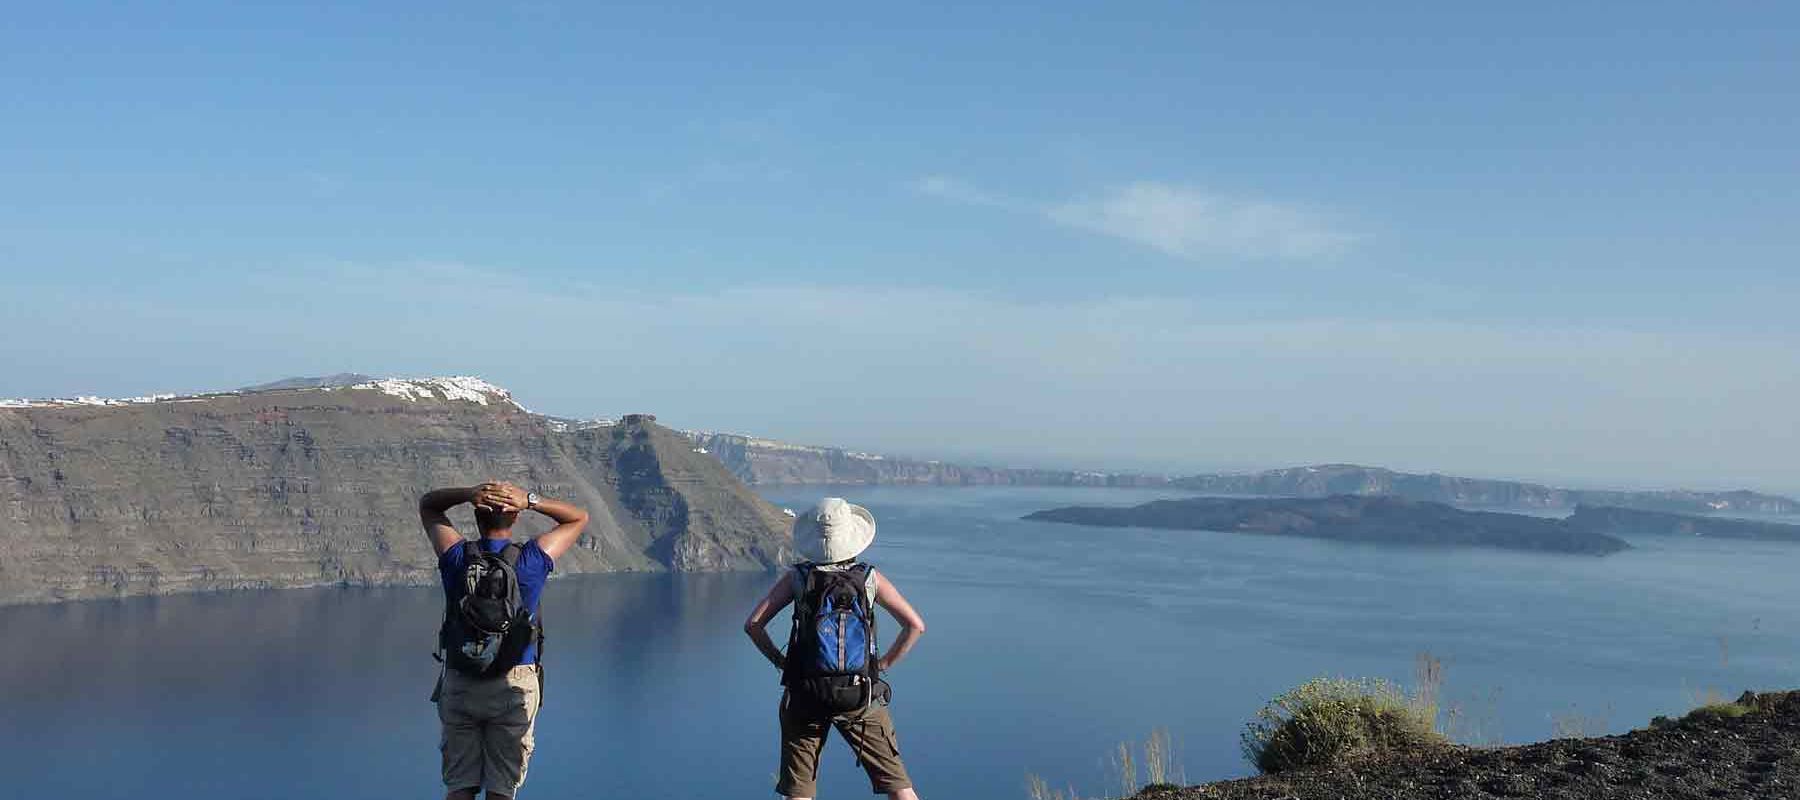 2 BikeHike Travelers overlooking Greek Islands